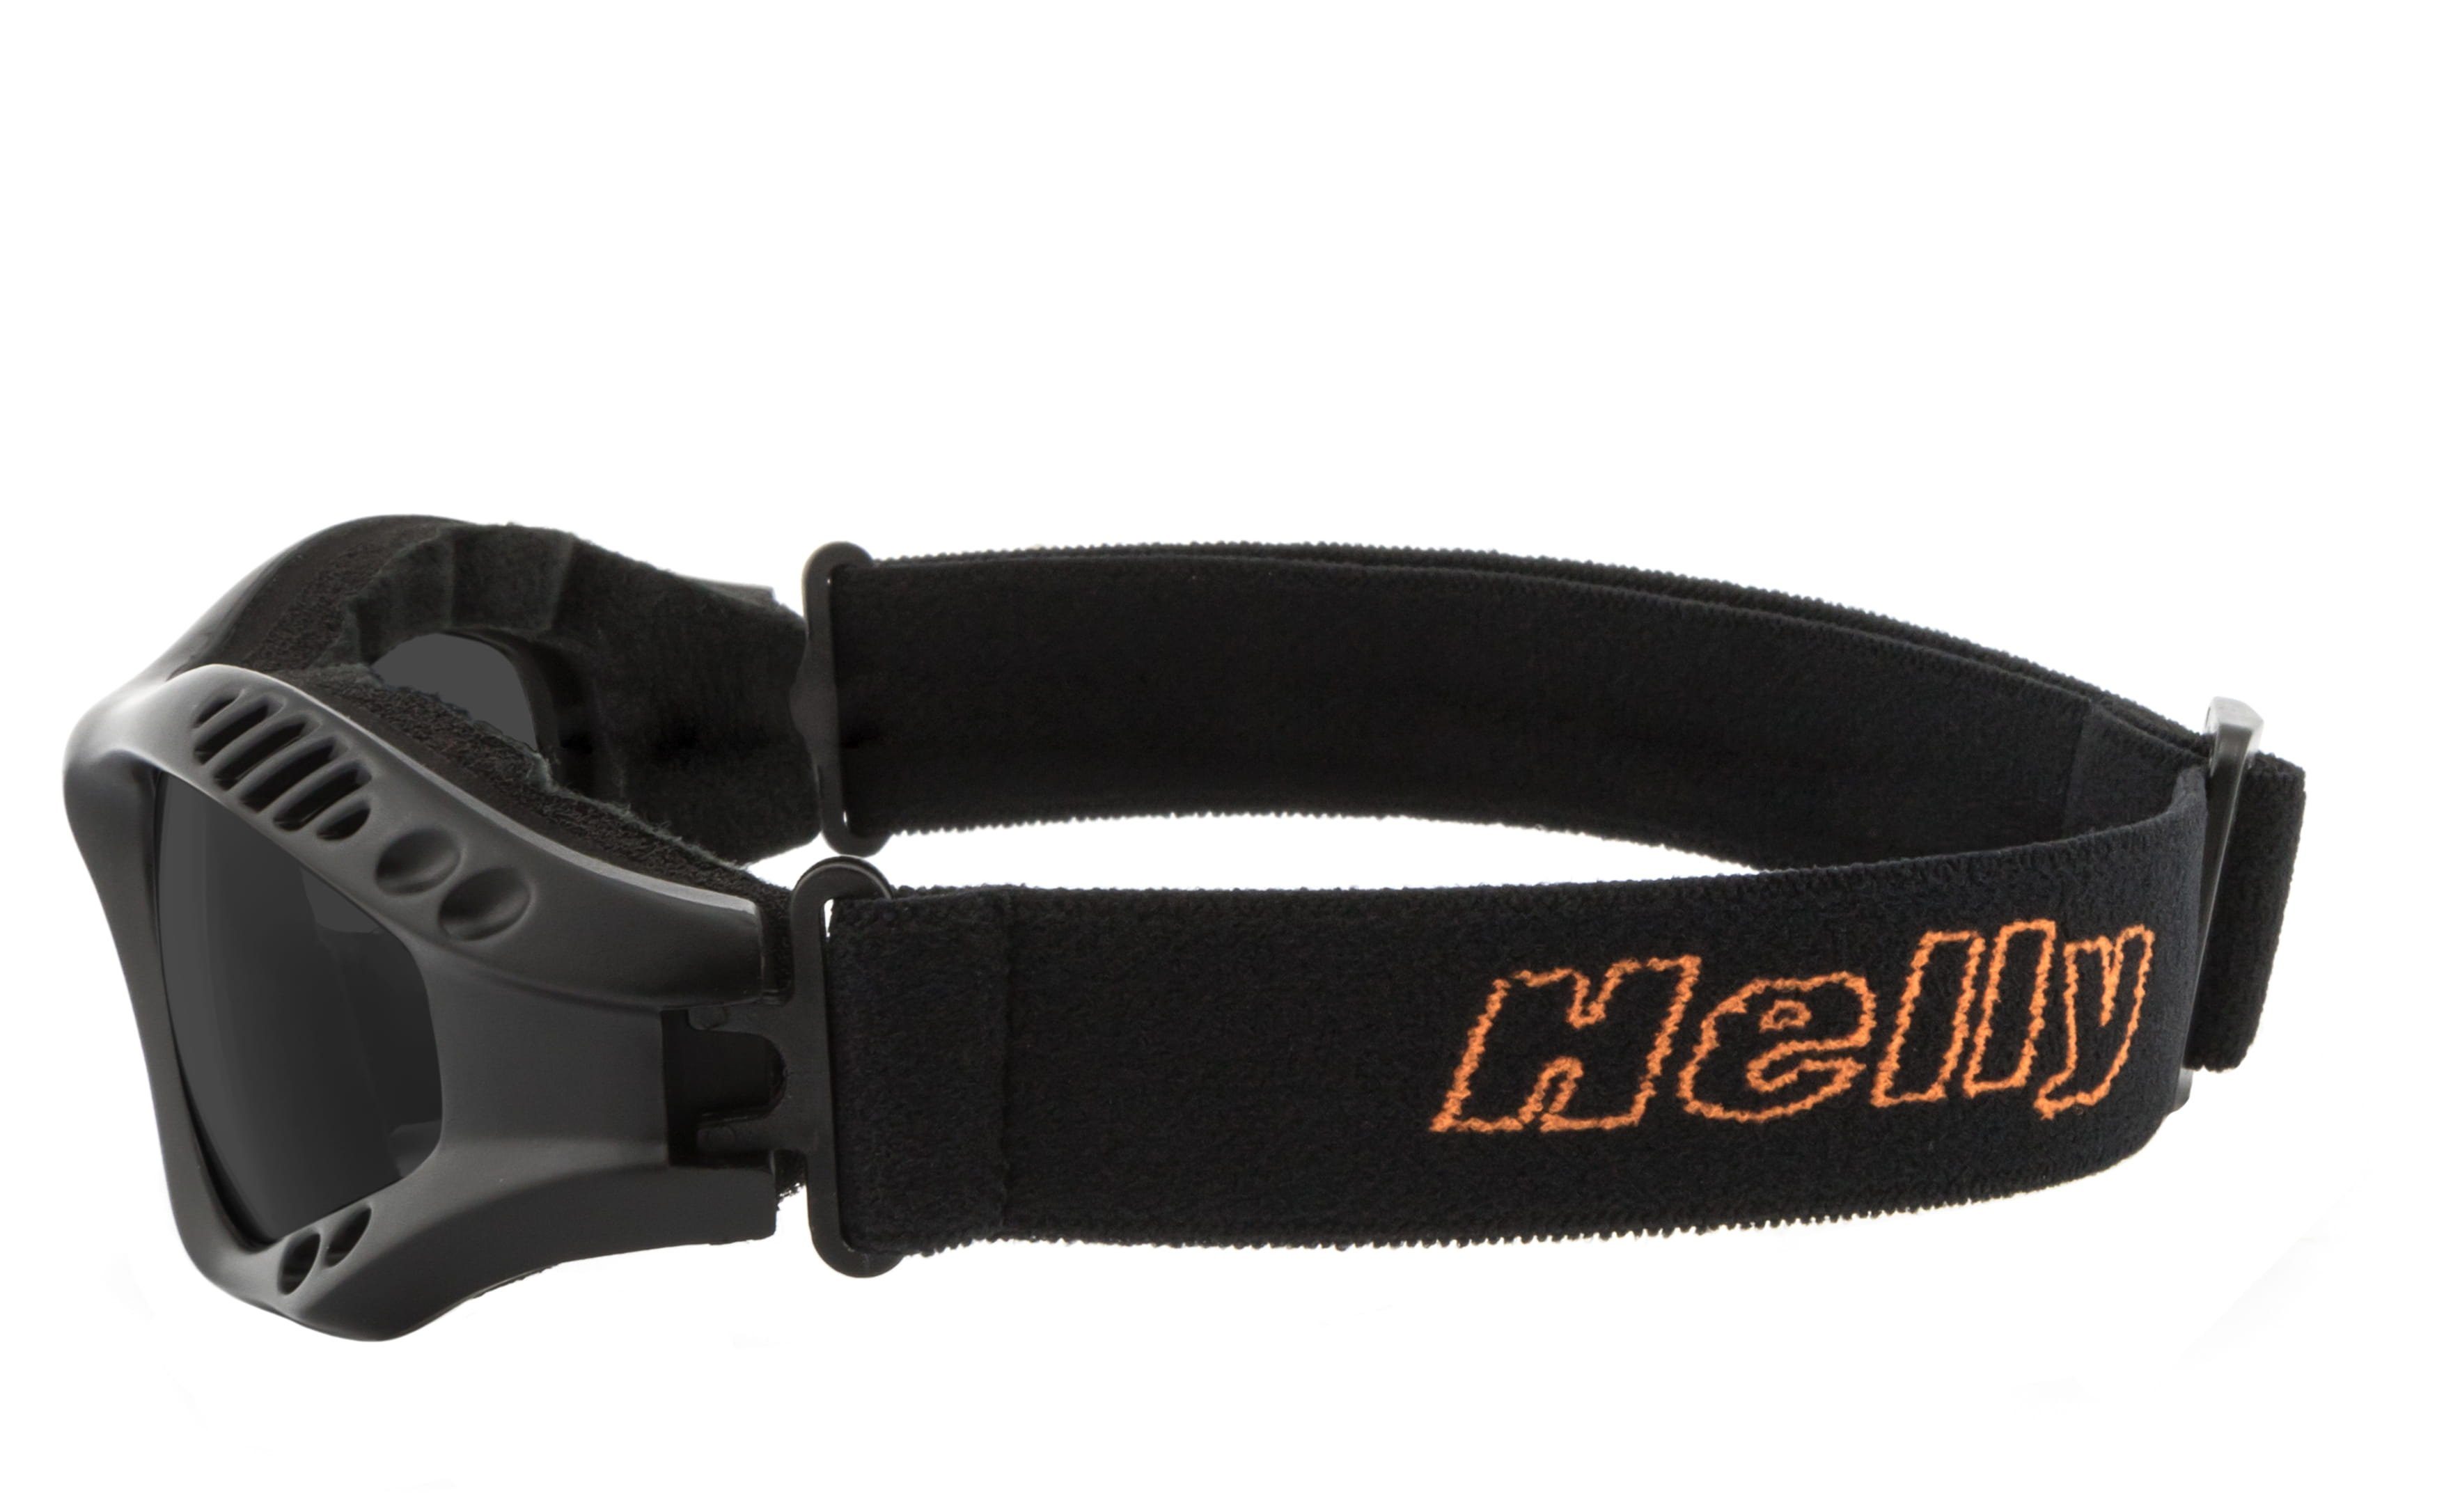 Helly - No.1 hellrider, Motorradbrille Motorradbrille gepolsterte Bikereyes